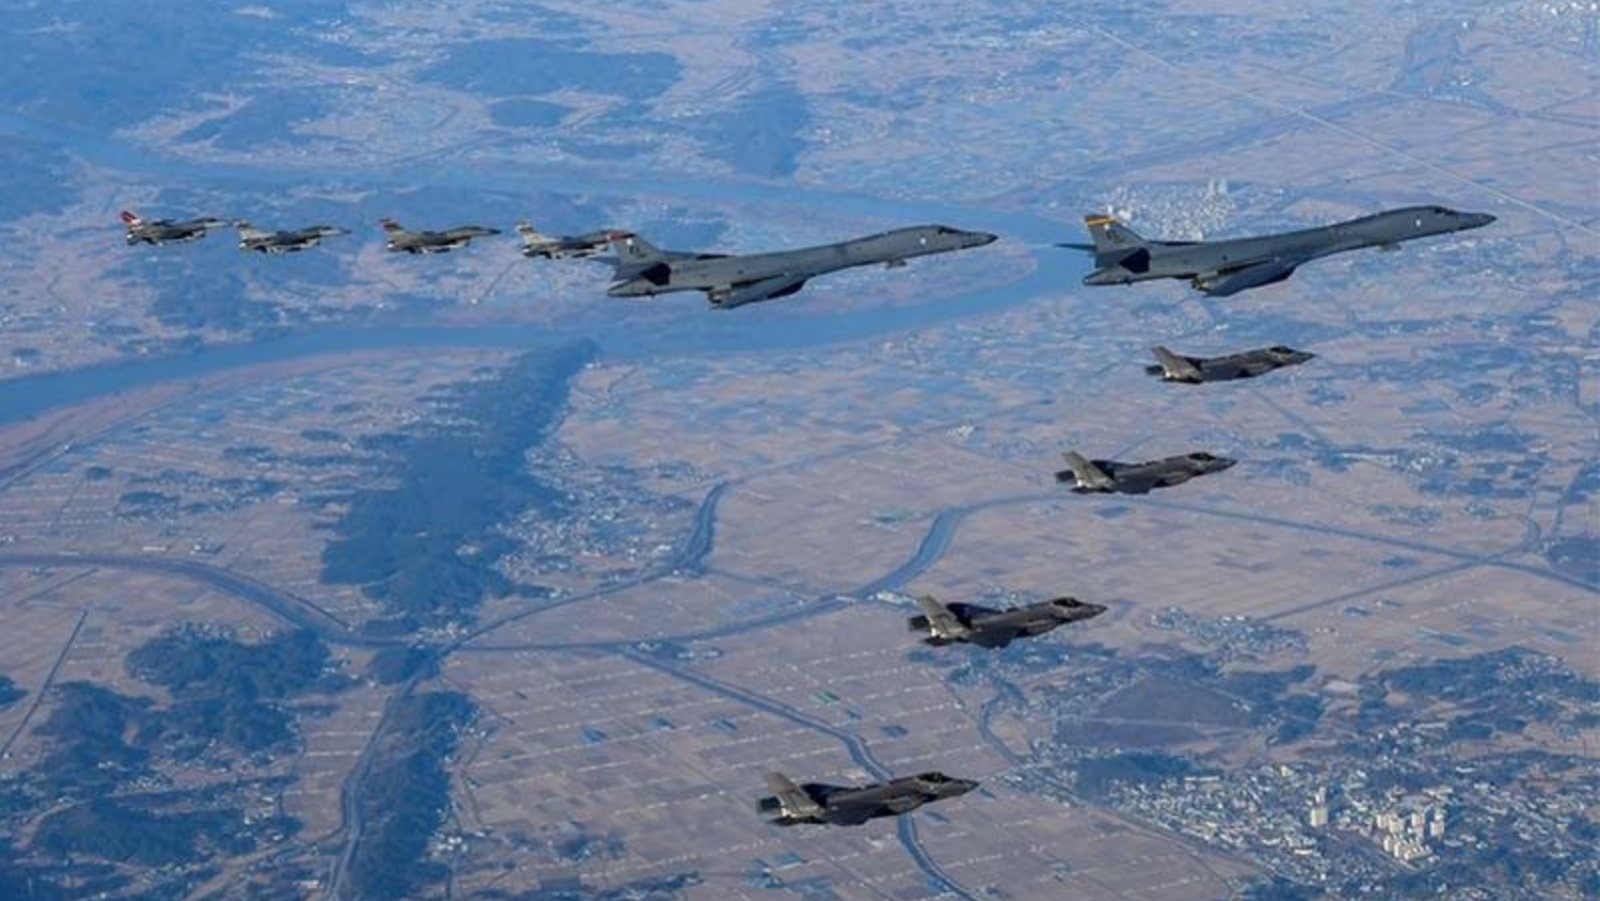 قاذفتان ثقيلتان من طراز B-1B للقوات الجوية الأميركية وأربع طائرات مقاتلة من طراز F-16 جنبًا إلى جنب مع أربع طائرات مقاتلة تابعة للقوات الجوية الكورية الجنوبية من طراز F-35 خلال مناورة جوية مشتركة تسمى 